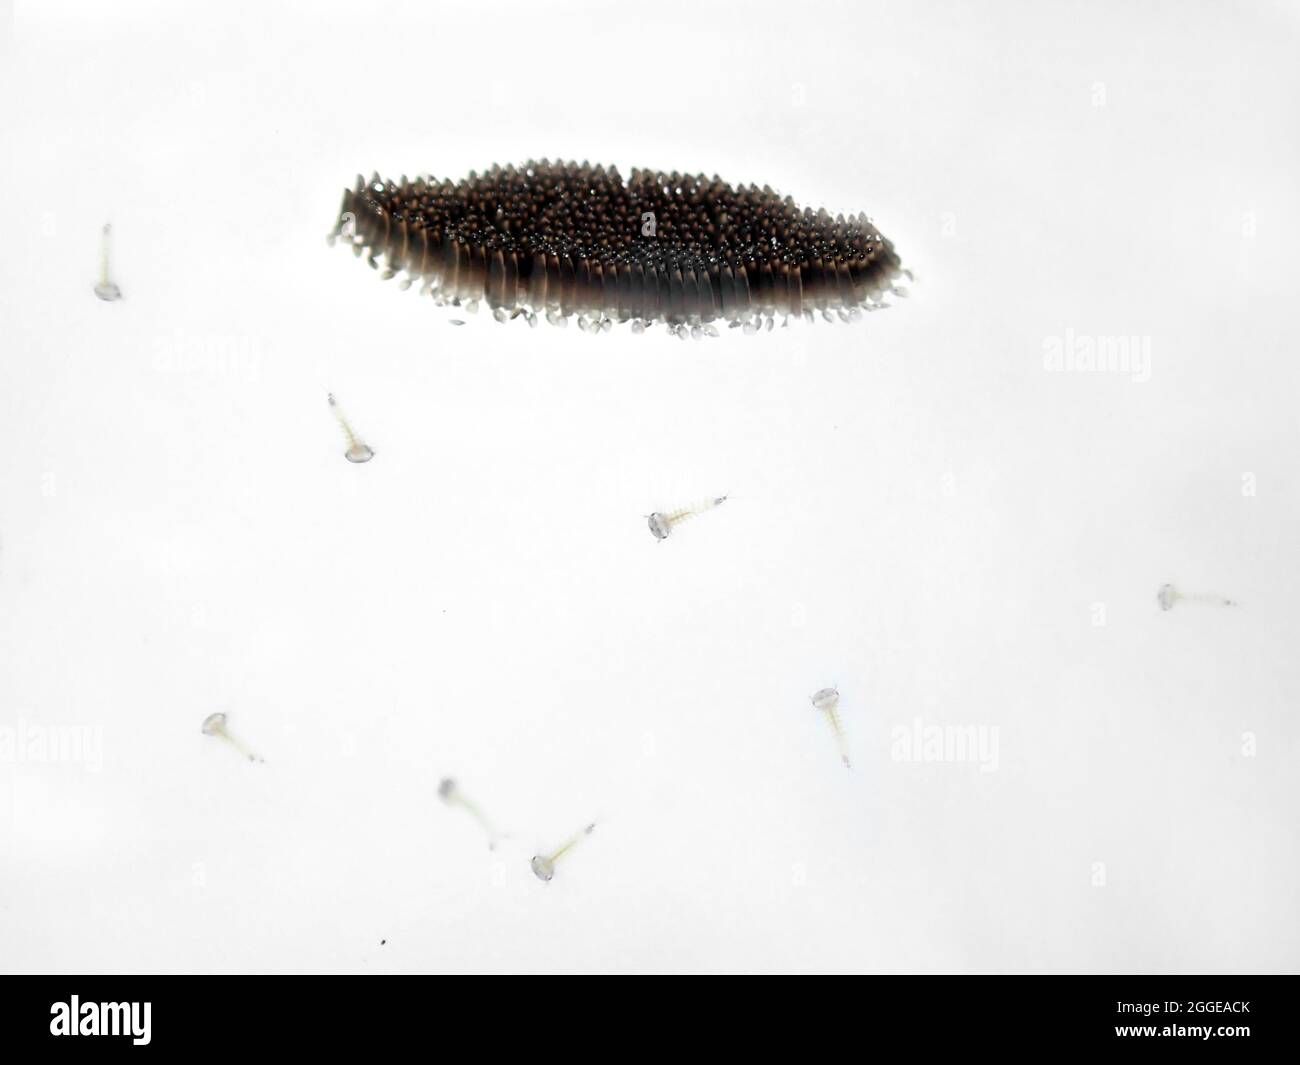 zanzara della casa del nord (Culex pipipiens), uova e larve appena schiusa della zanzara sotterranea di Londra preferita dall'uomo (Culex piens molestus) Foto Stock